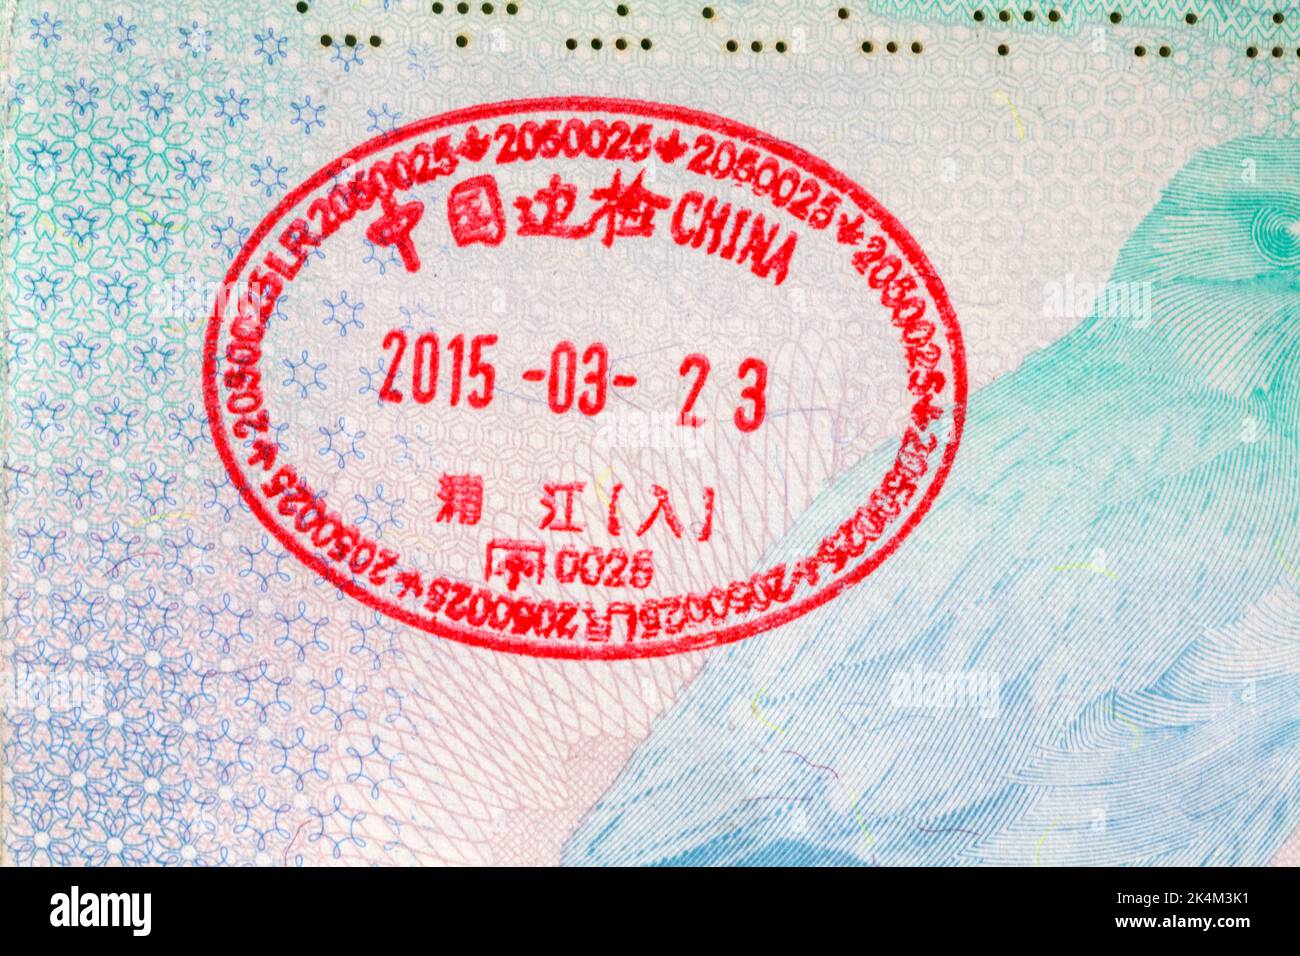 China 2015 03 23 stamp in British passport Stock Photo